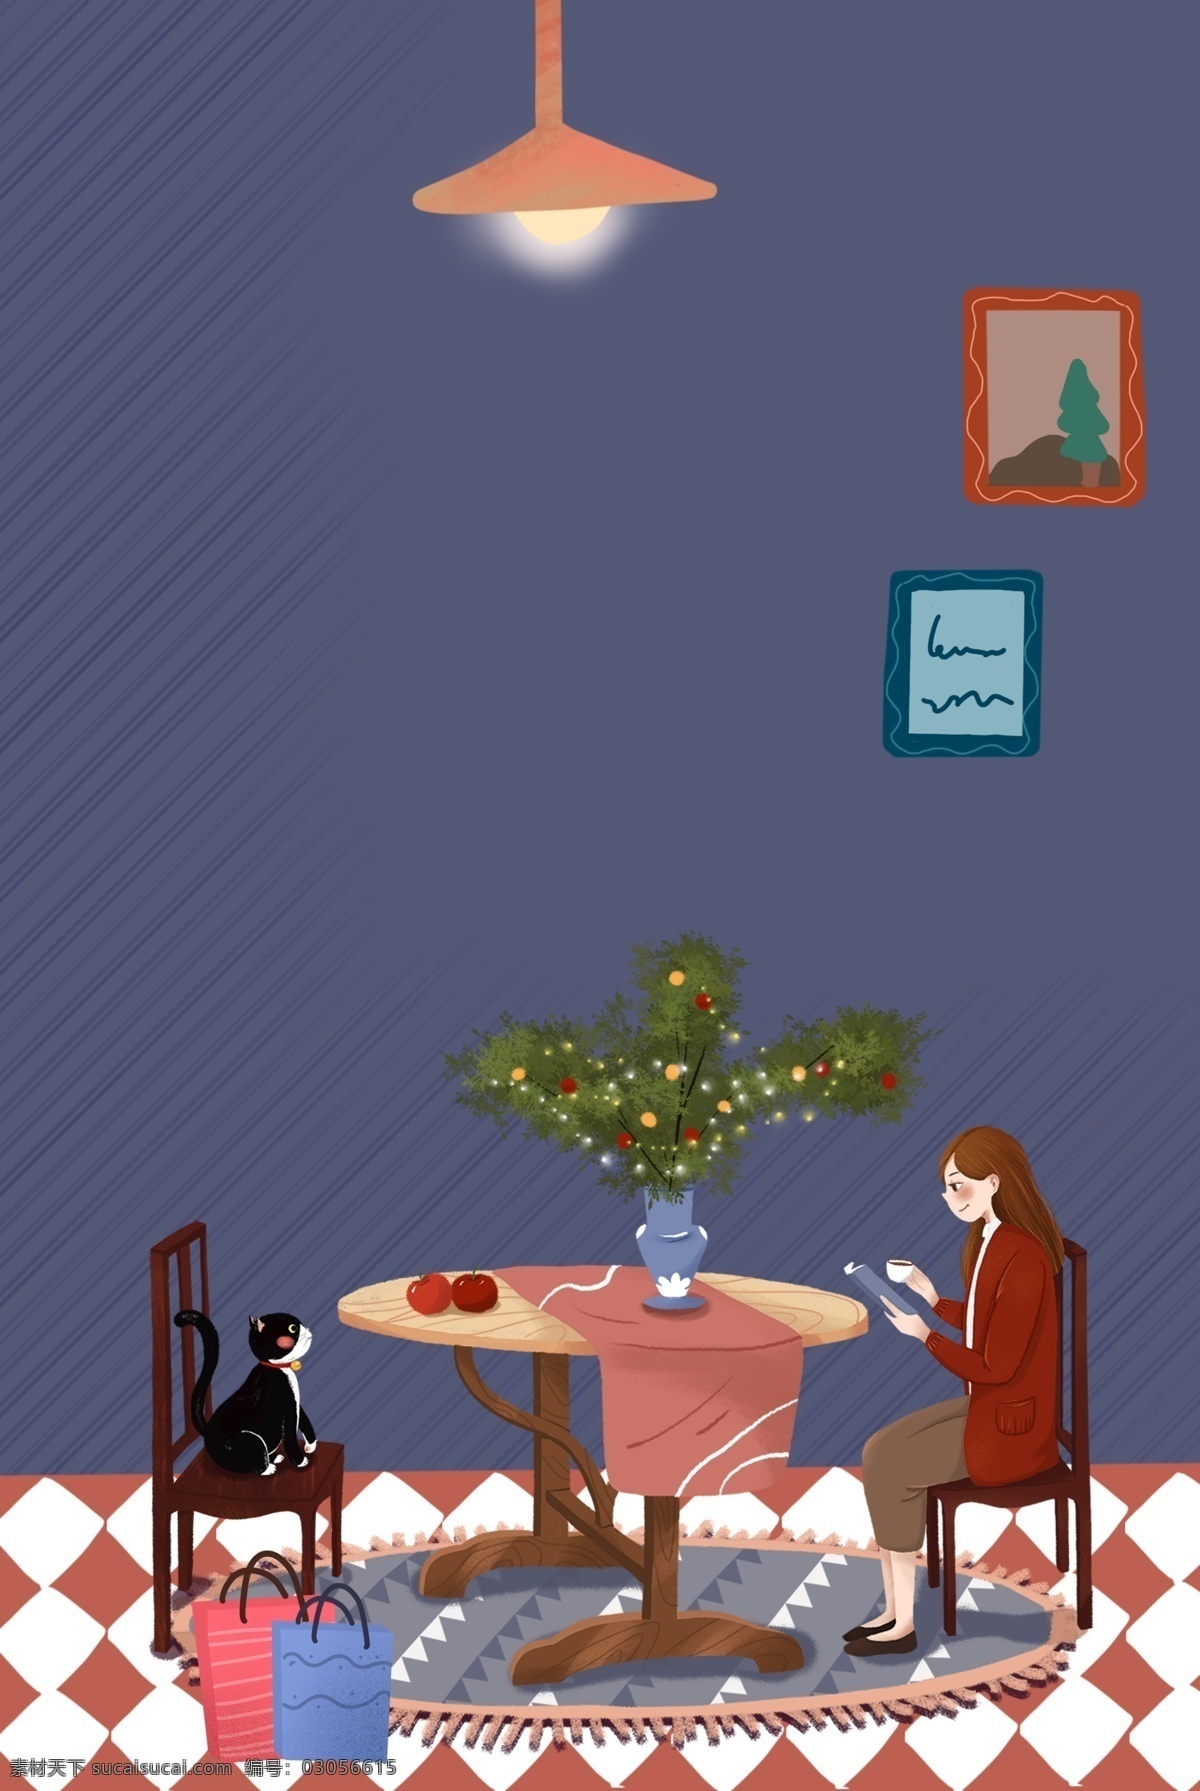 圣诞节 餐厅 吃饭 女孩 宠物 促销 海报 打折 圣诞礼物 圣诞树 猫咪 插画风 banner